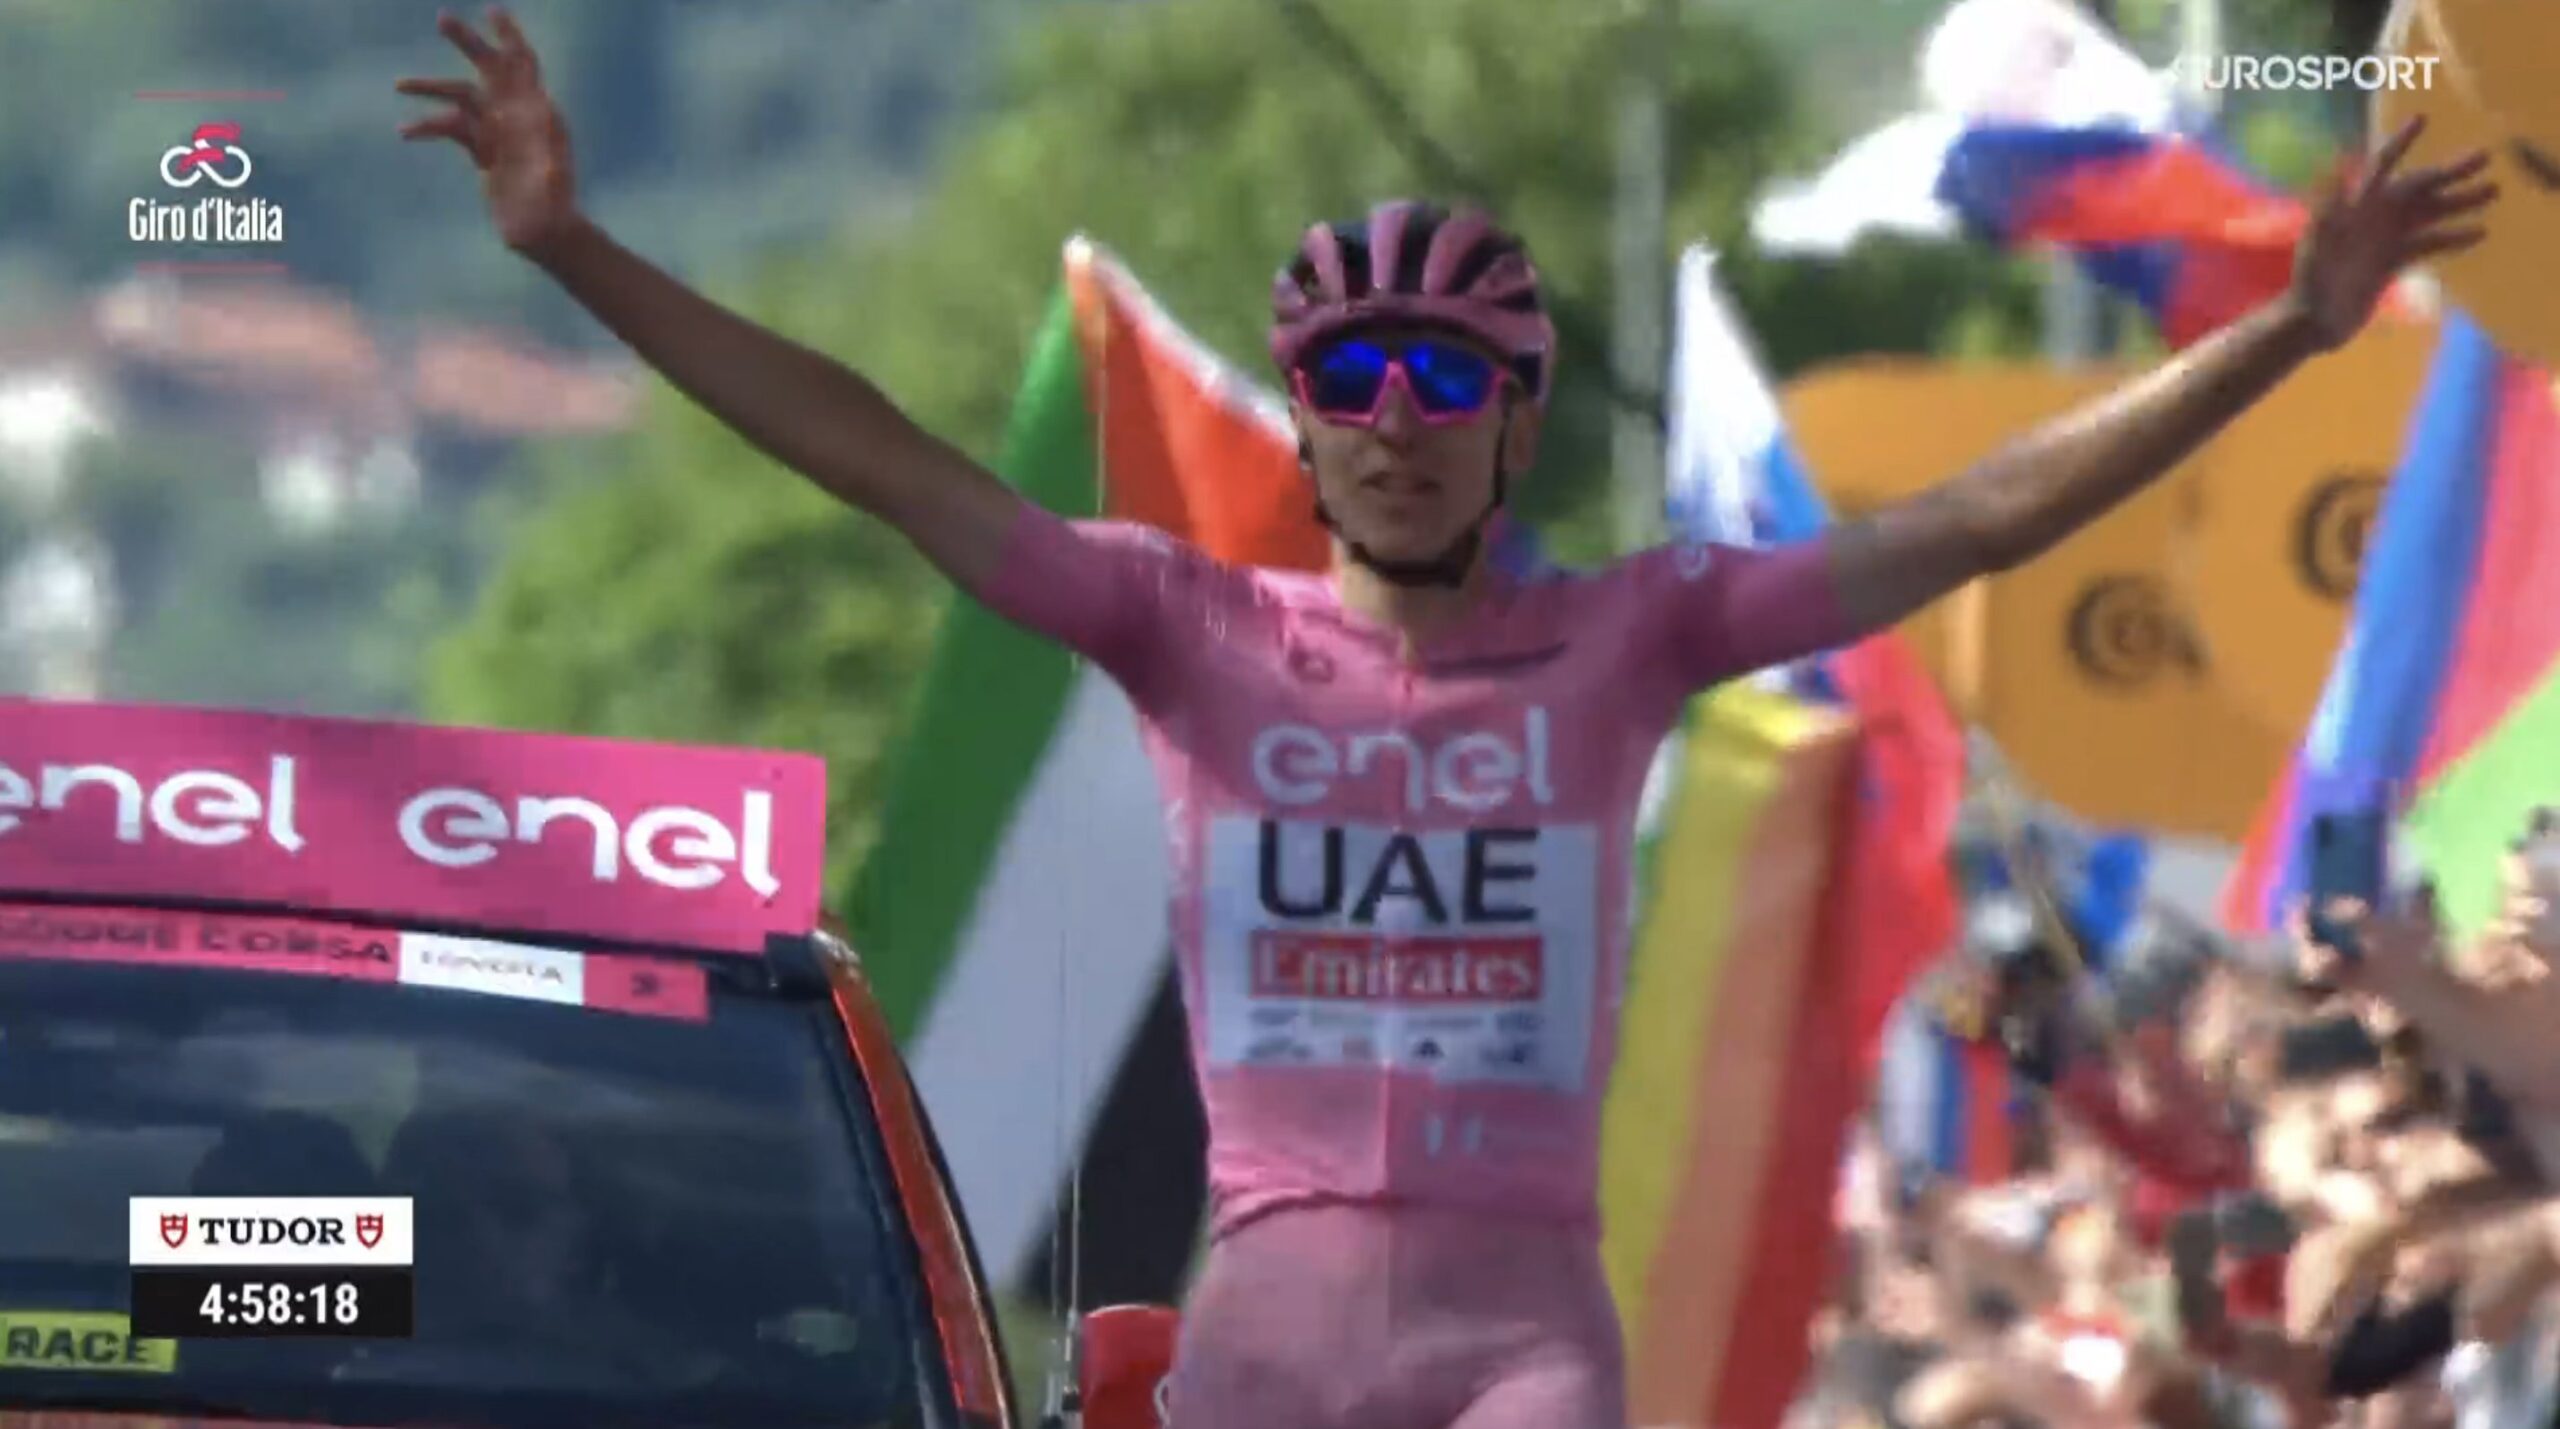 Classement de la 20ème étape du Tour d'Italie, remportée par Tadej Pogacar